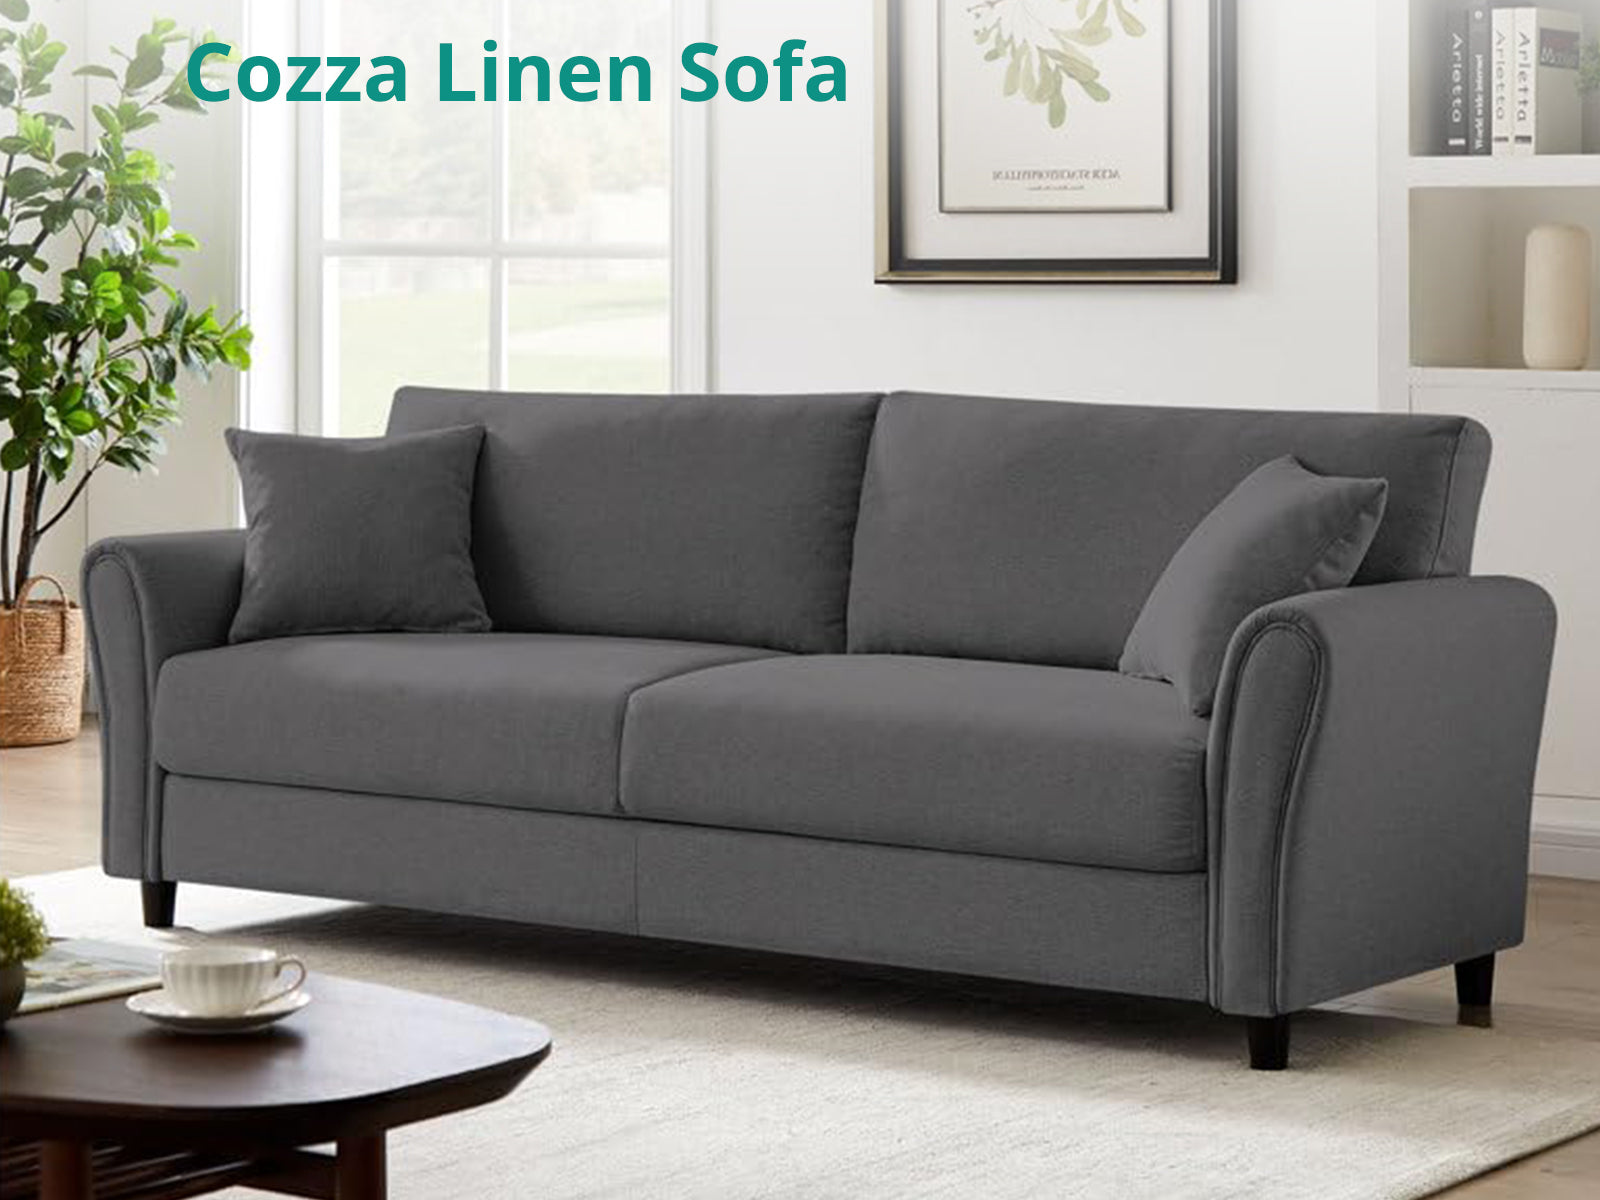 Cozza Linen Sofa Grey Tsb Living